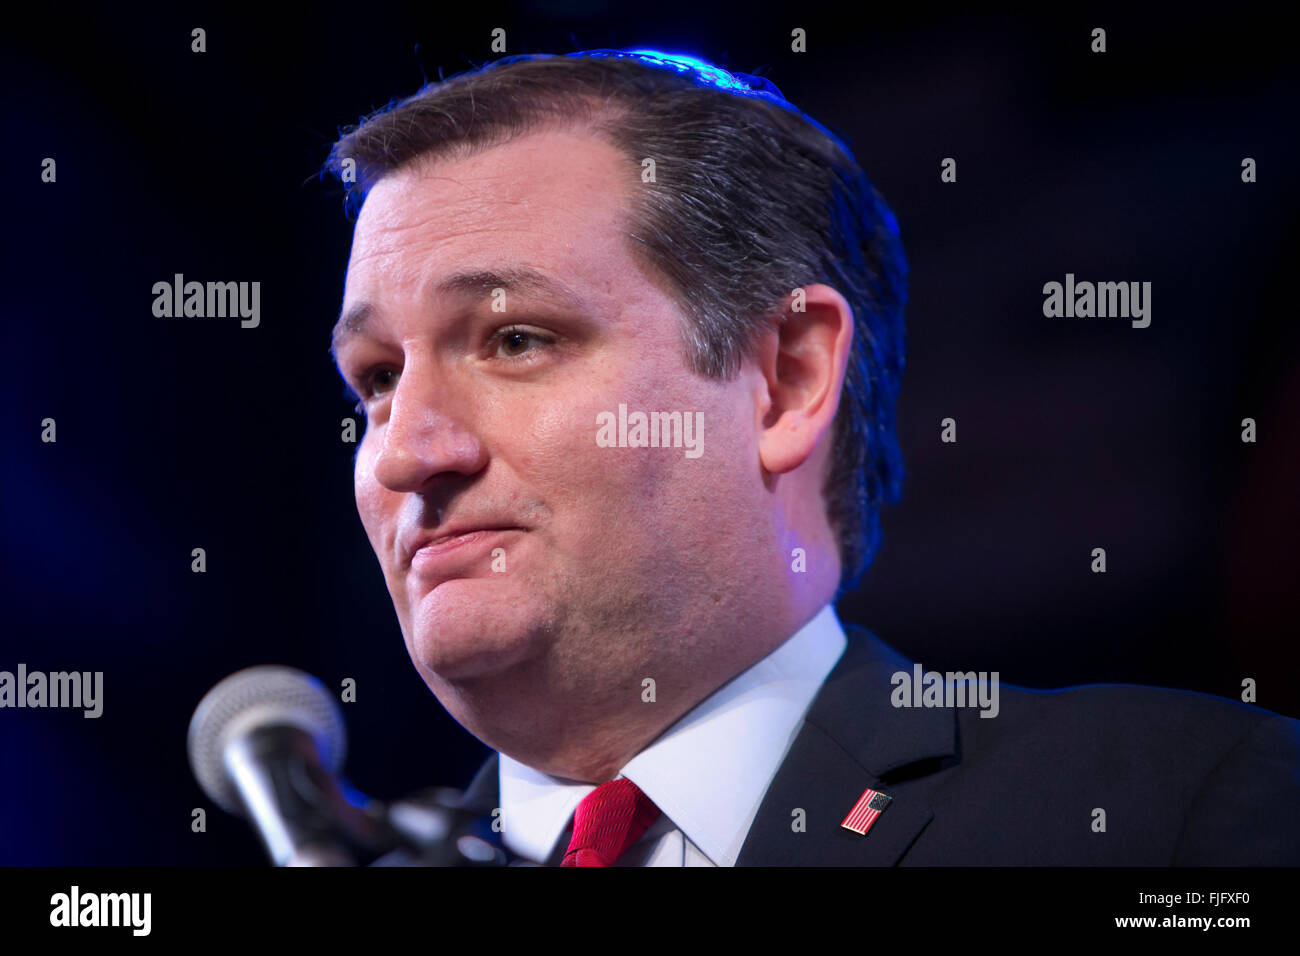 Presidenziale repubblicano speranzoso Ted Cruz risolve folla mentre assaporando la vittoria in Texas elezione primaria con i sostenitori Foto Stock